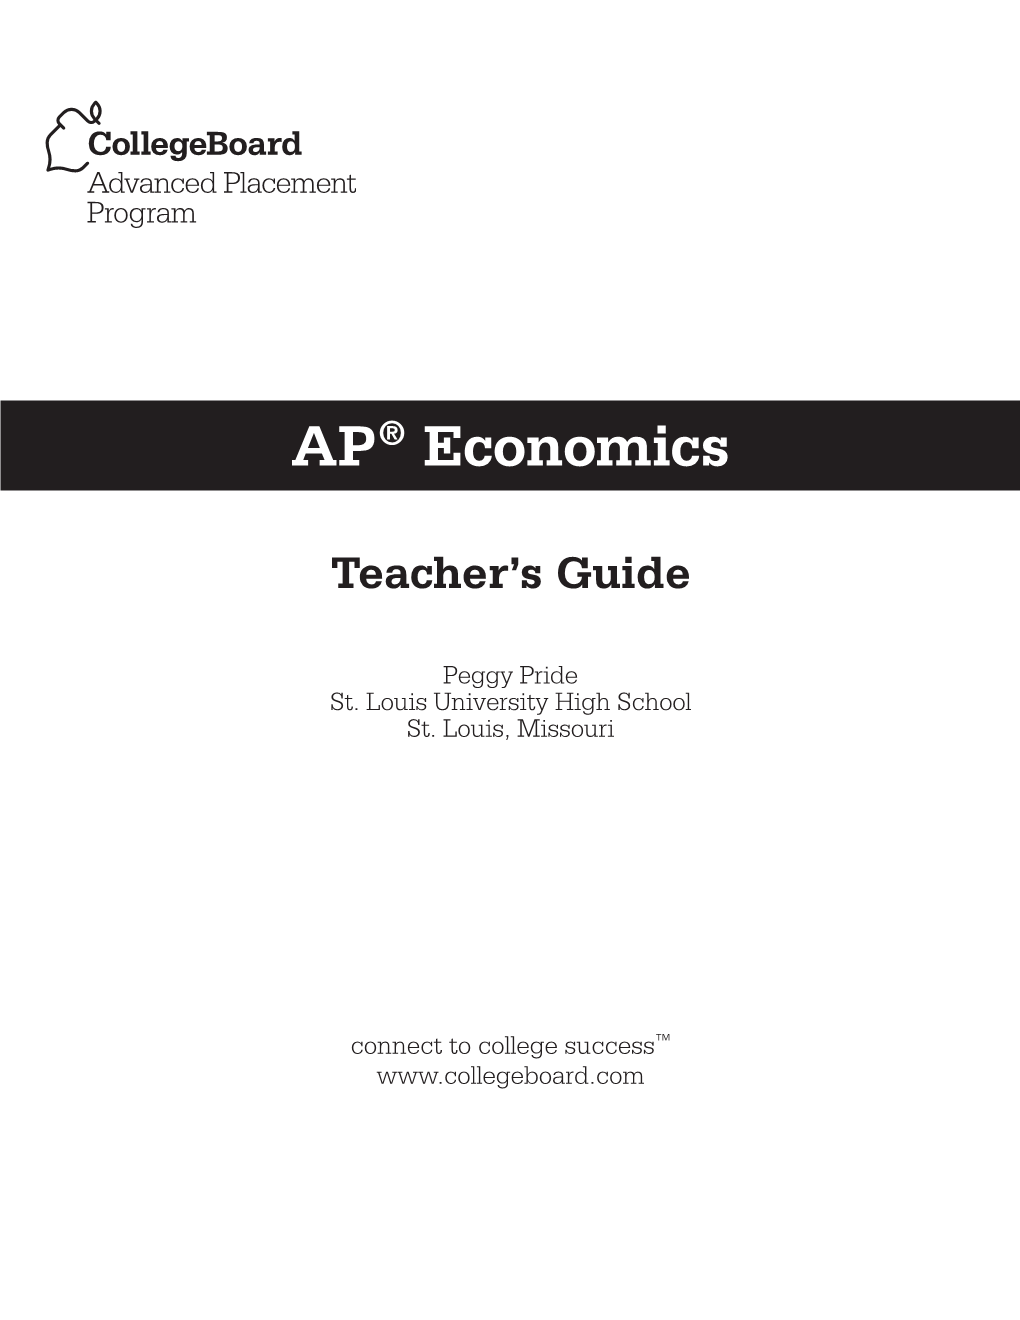 AP Economics Teacher's Guide